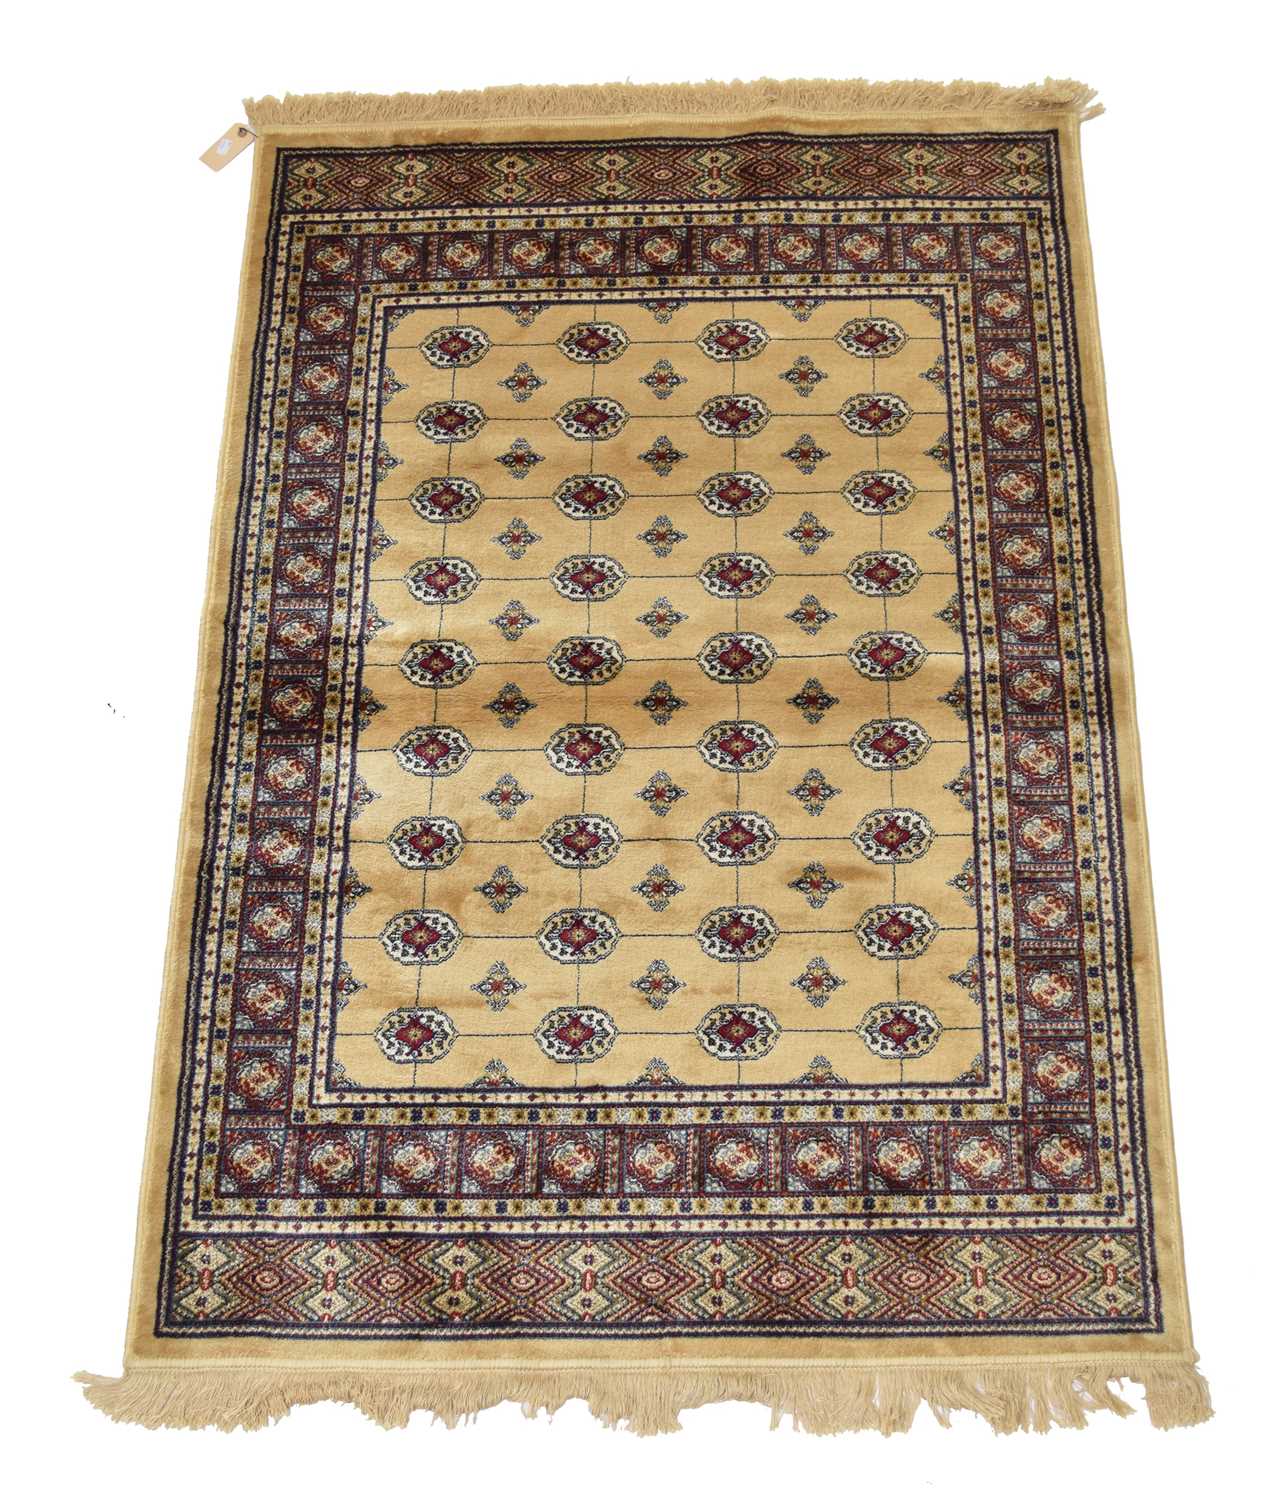 A Kashmir rug